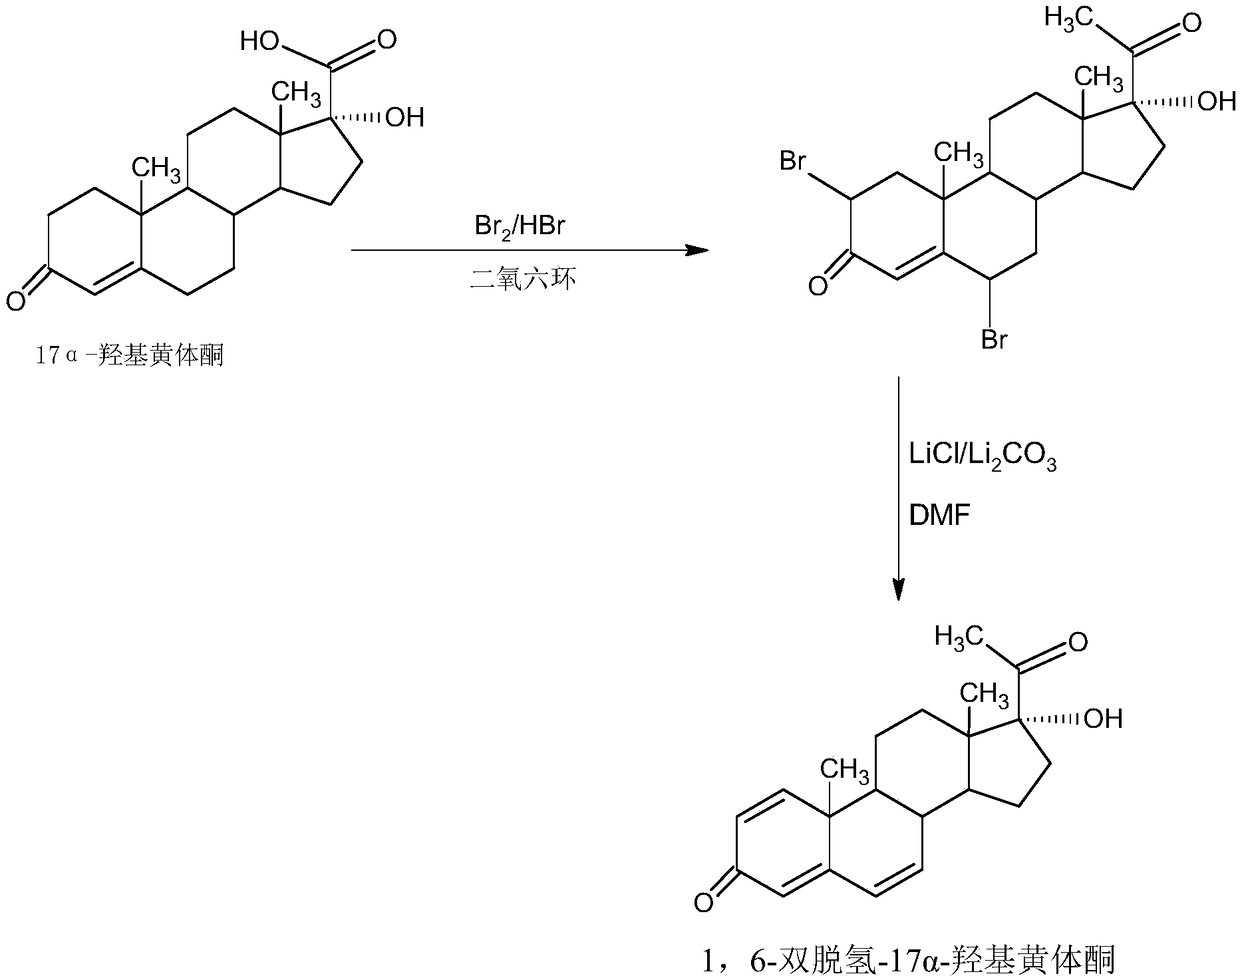 Method for preparing 1,6-didehydro-17 alpha-hydroxyprogesterone